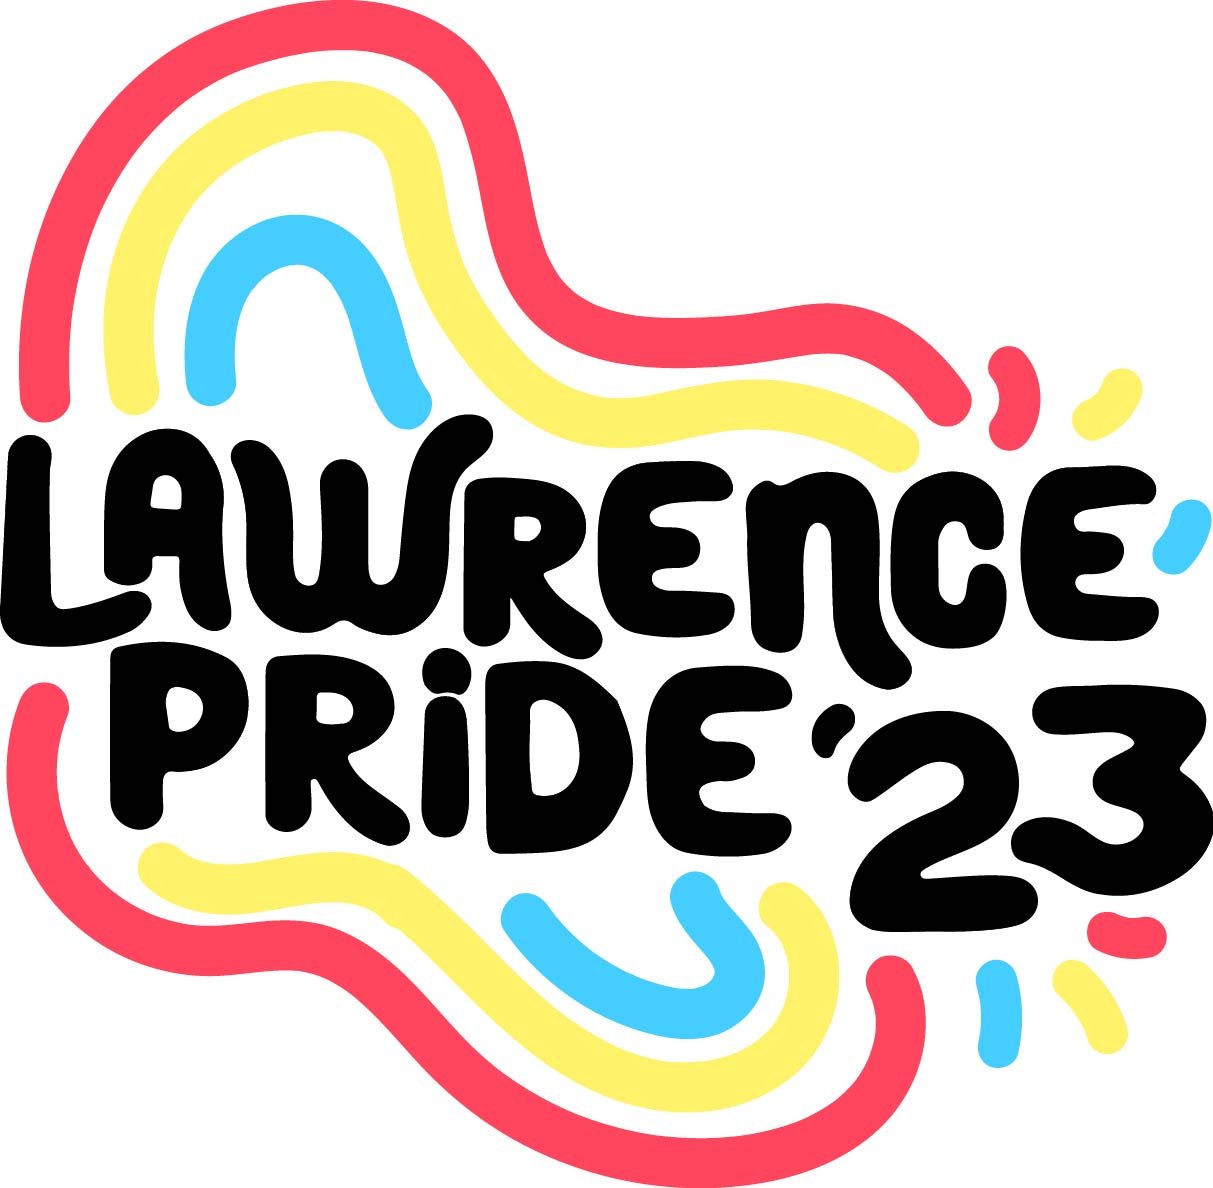 Lawrence Pride 23 Draft 1.jpg